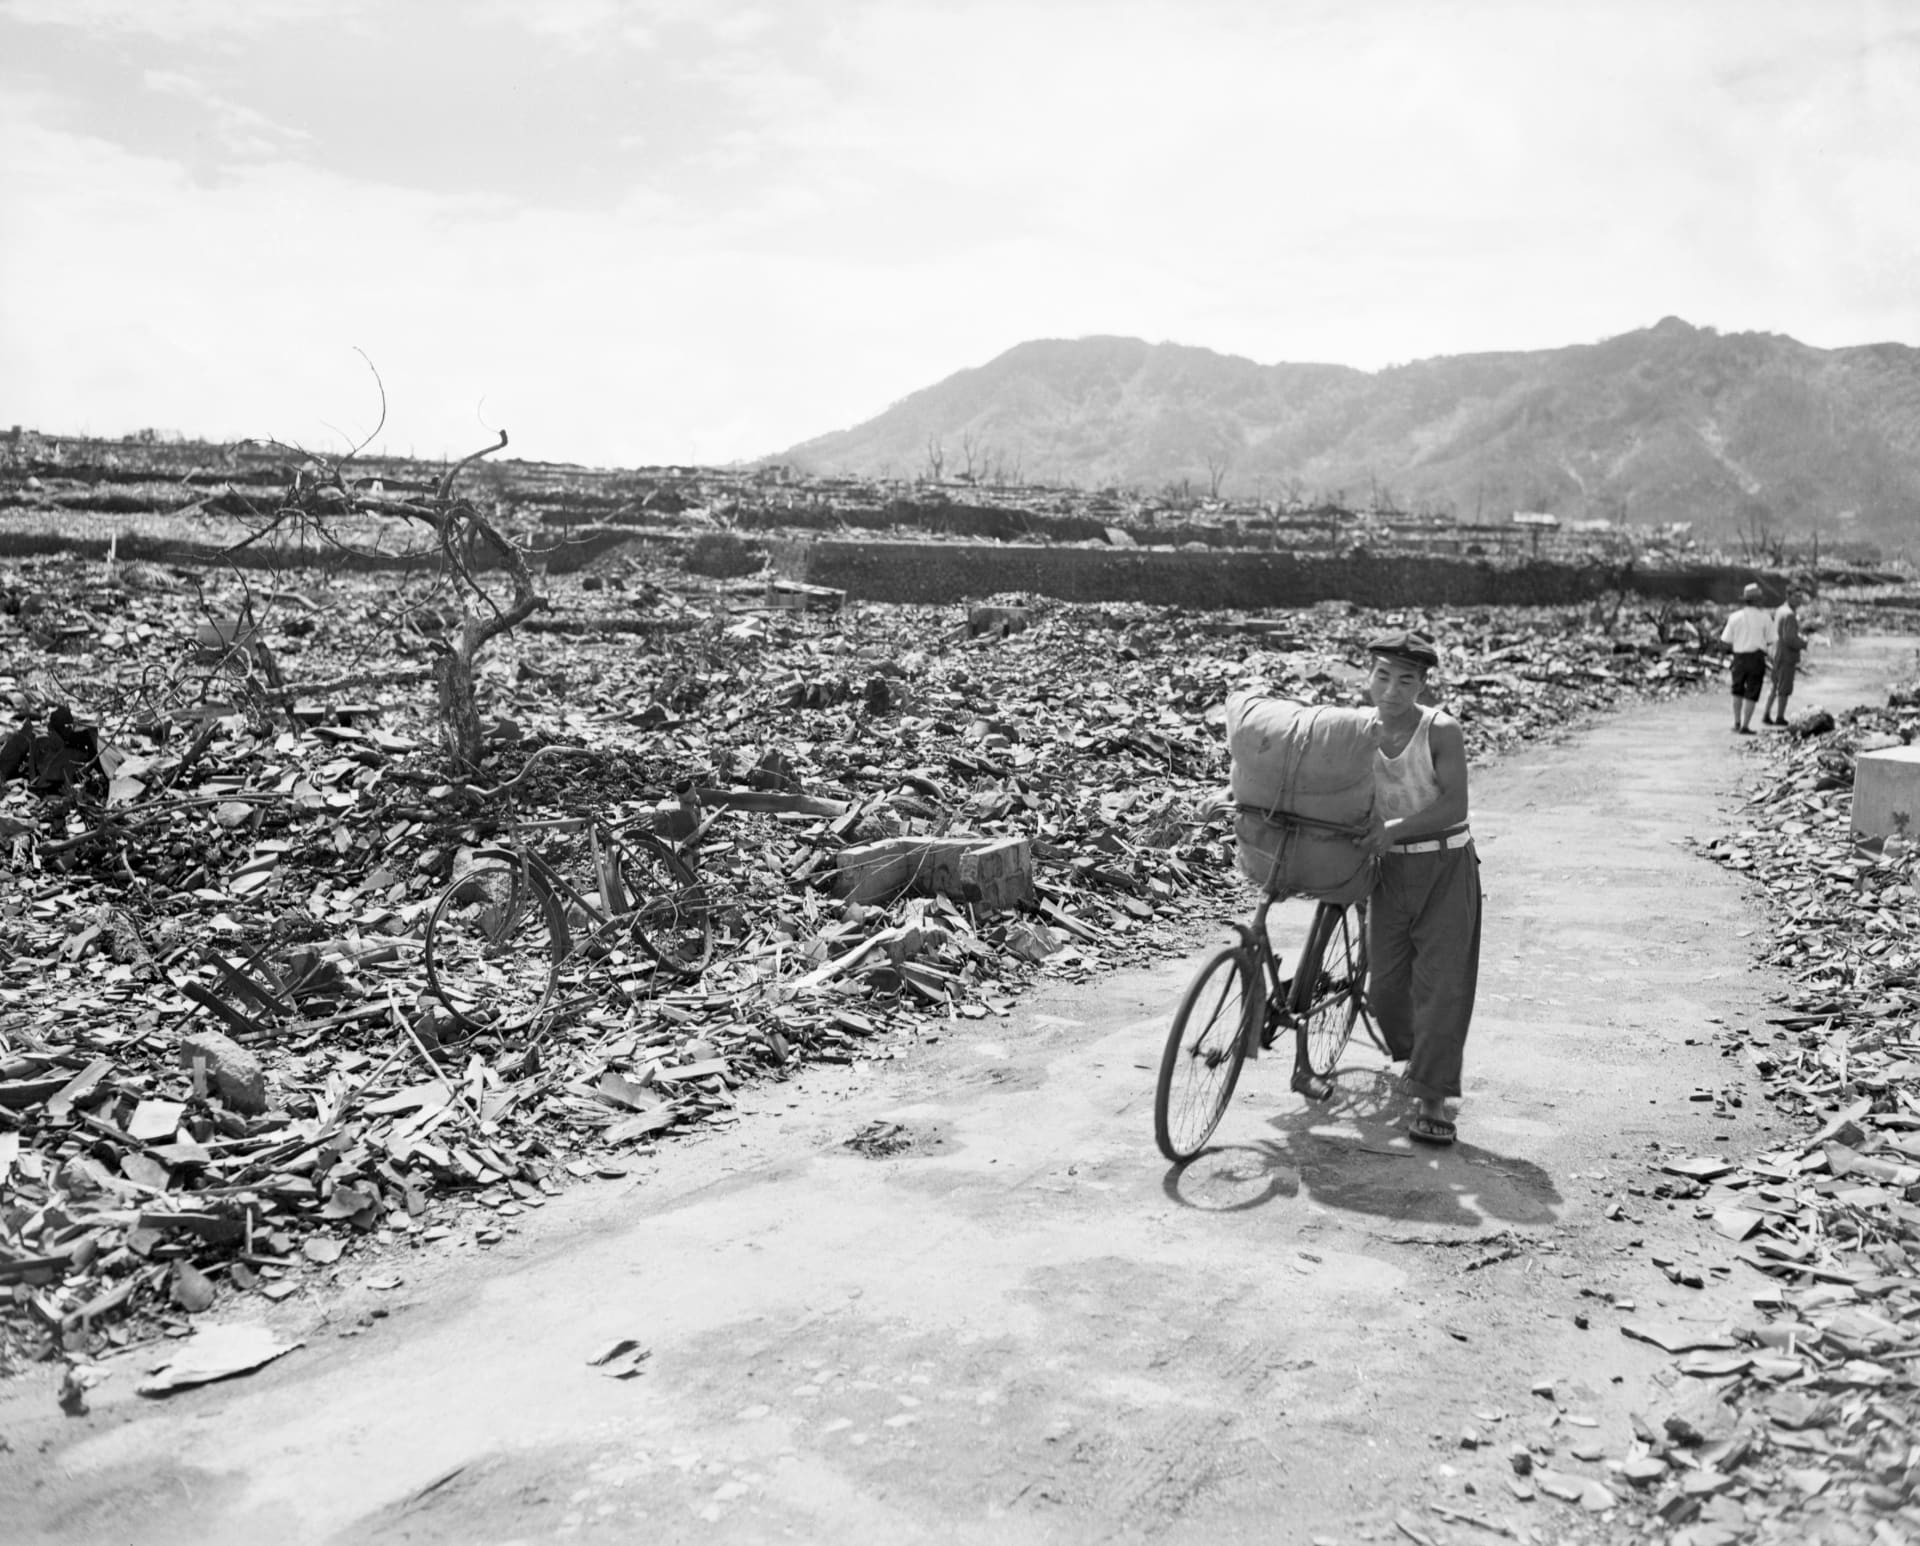 Spálená pustina. Tak vypadalo japonské město Nagasaki po výbuchu atomové bomby. O život okamžitě přišlo 40 tisíc lidí.